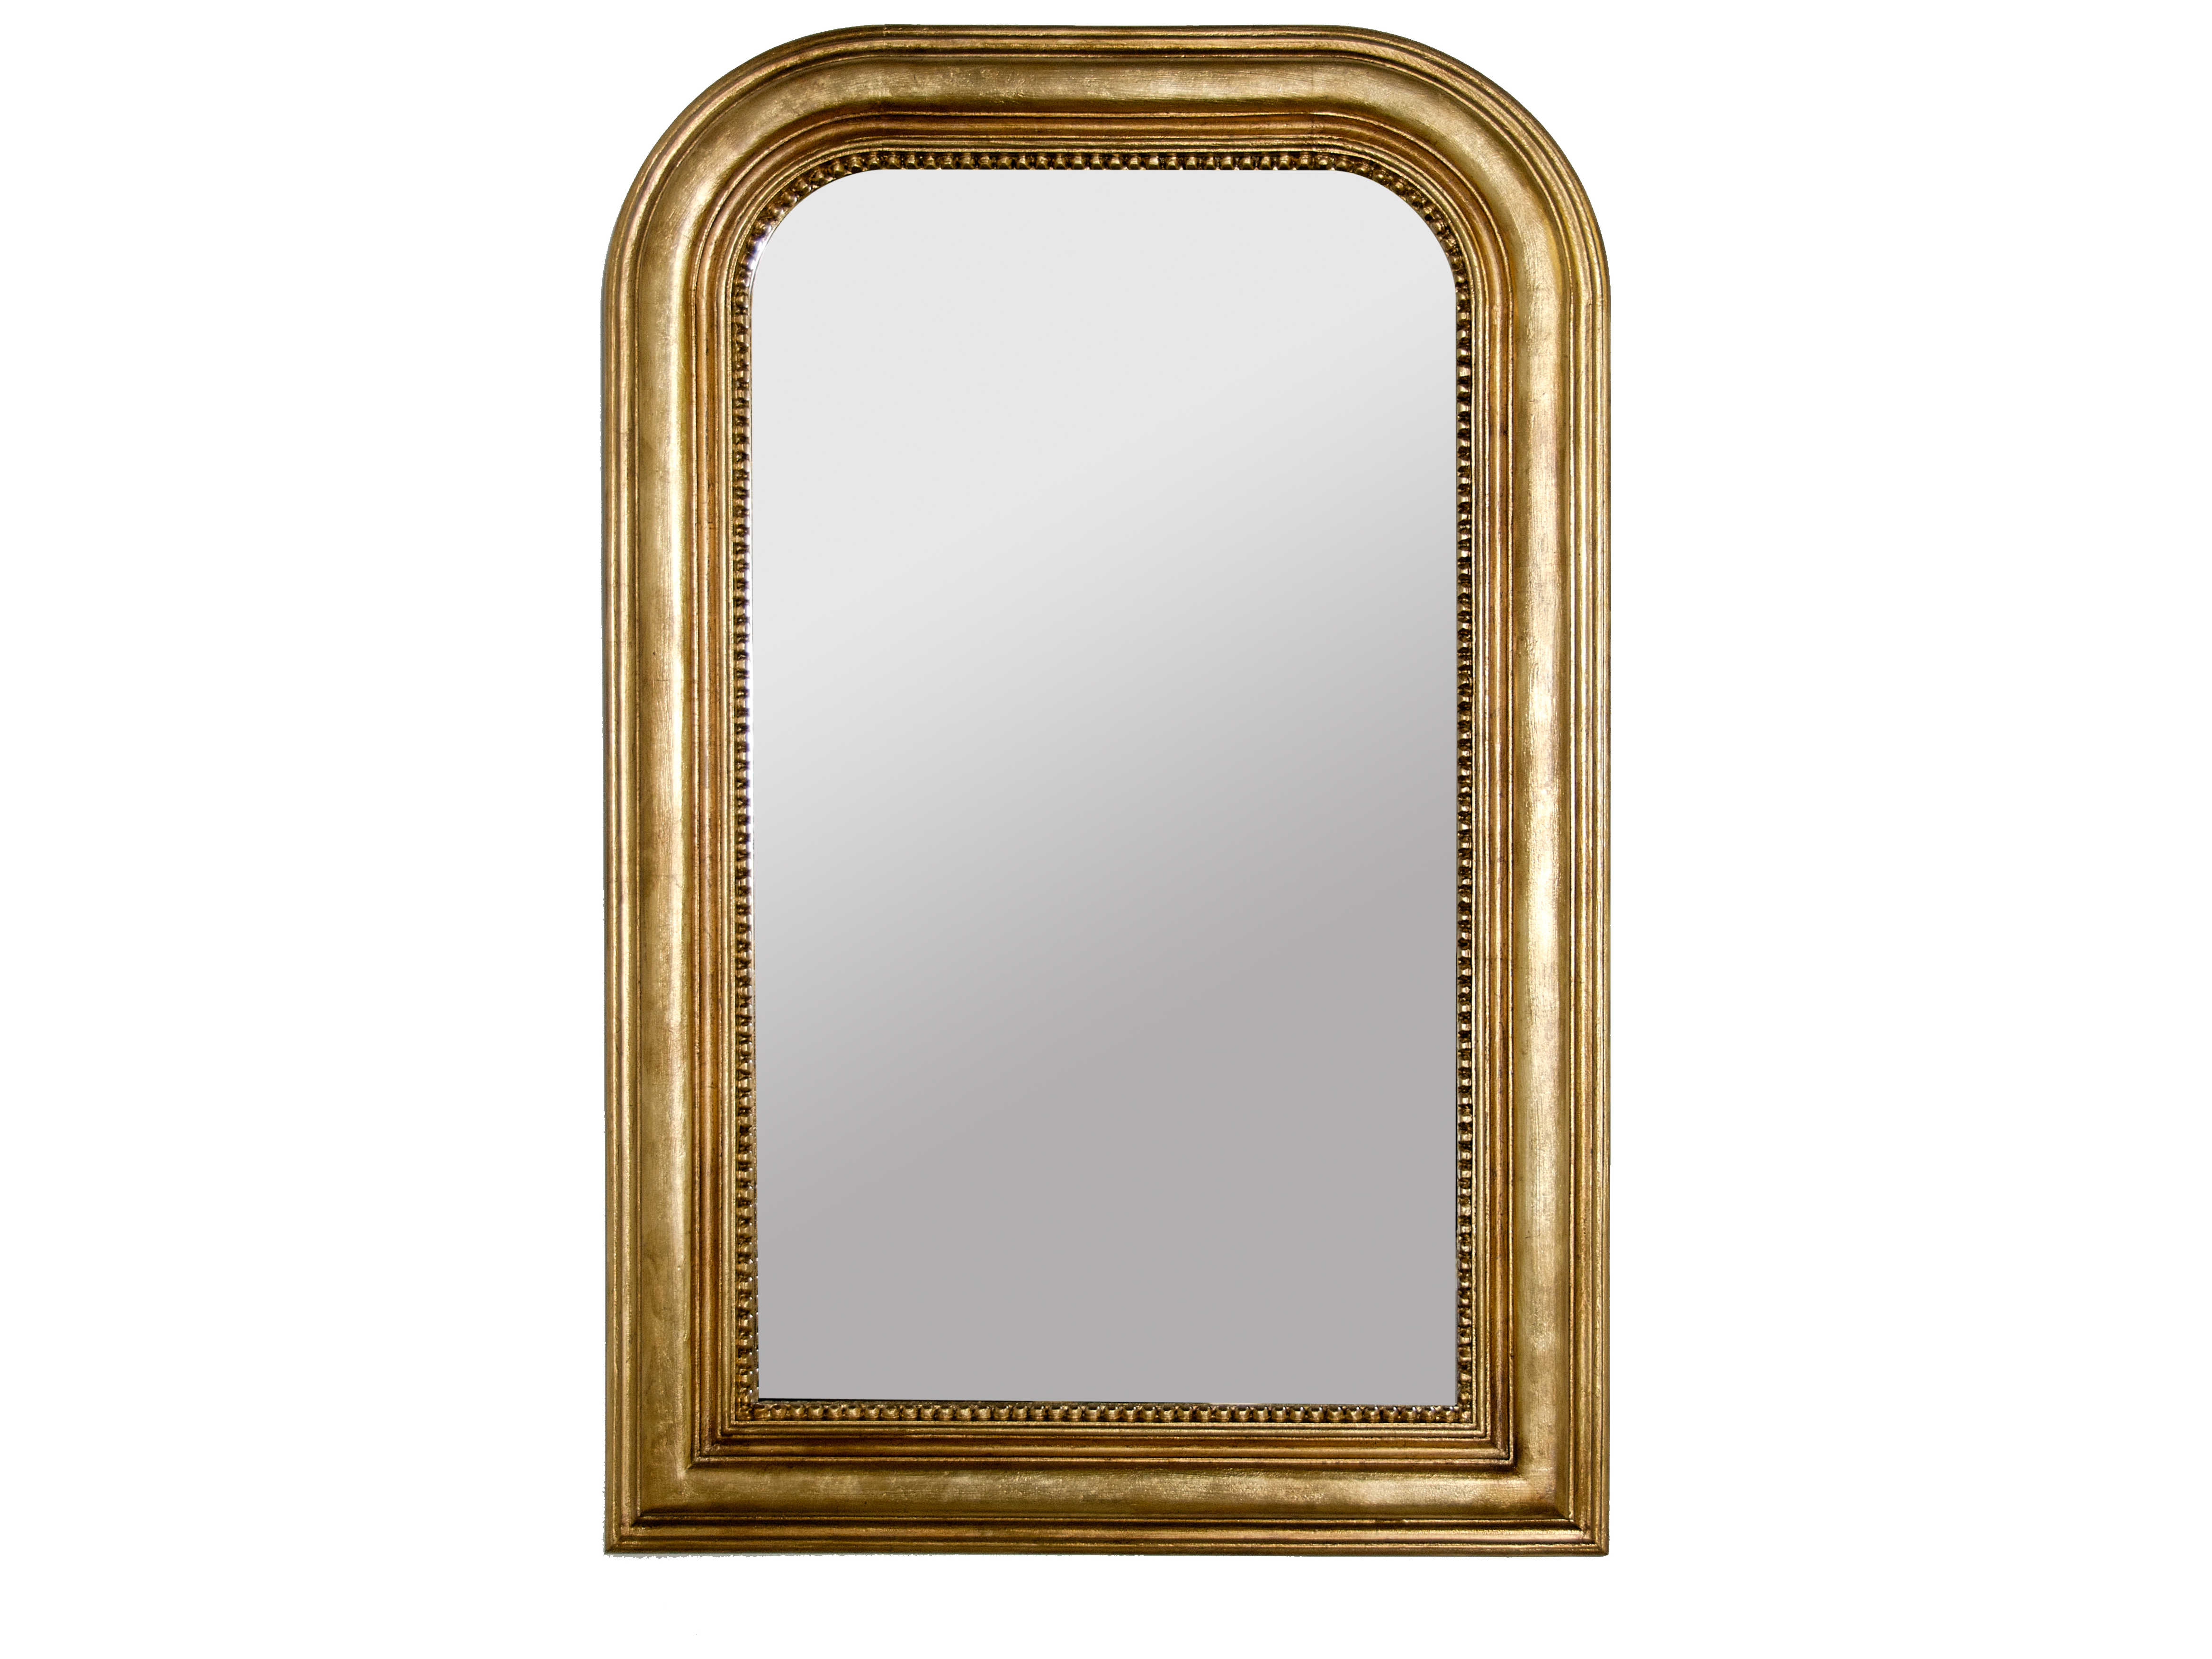 Купить зеркало настенное в спб. Зеркало Луи АРПО 1743. Зеркало DG Home 003999710. Зеркало 362 - model: настенное прямоугольное зеркало Gold Bronze Wall Mirror. Louvre Home зеркало.